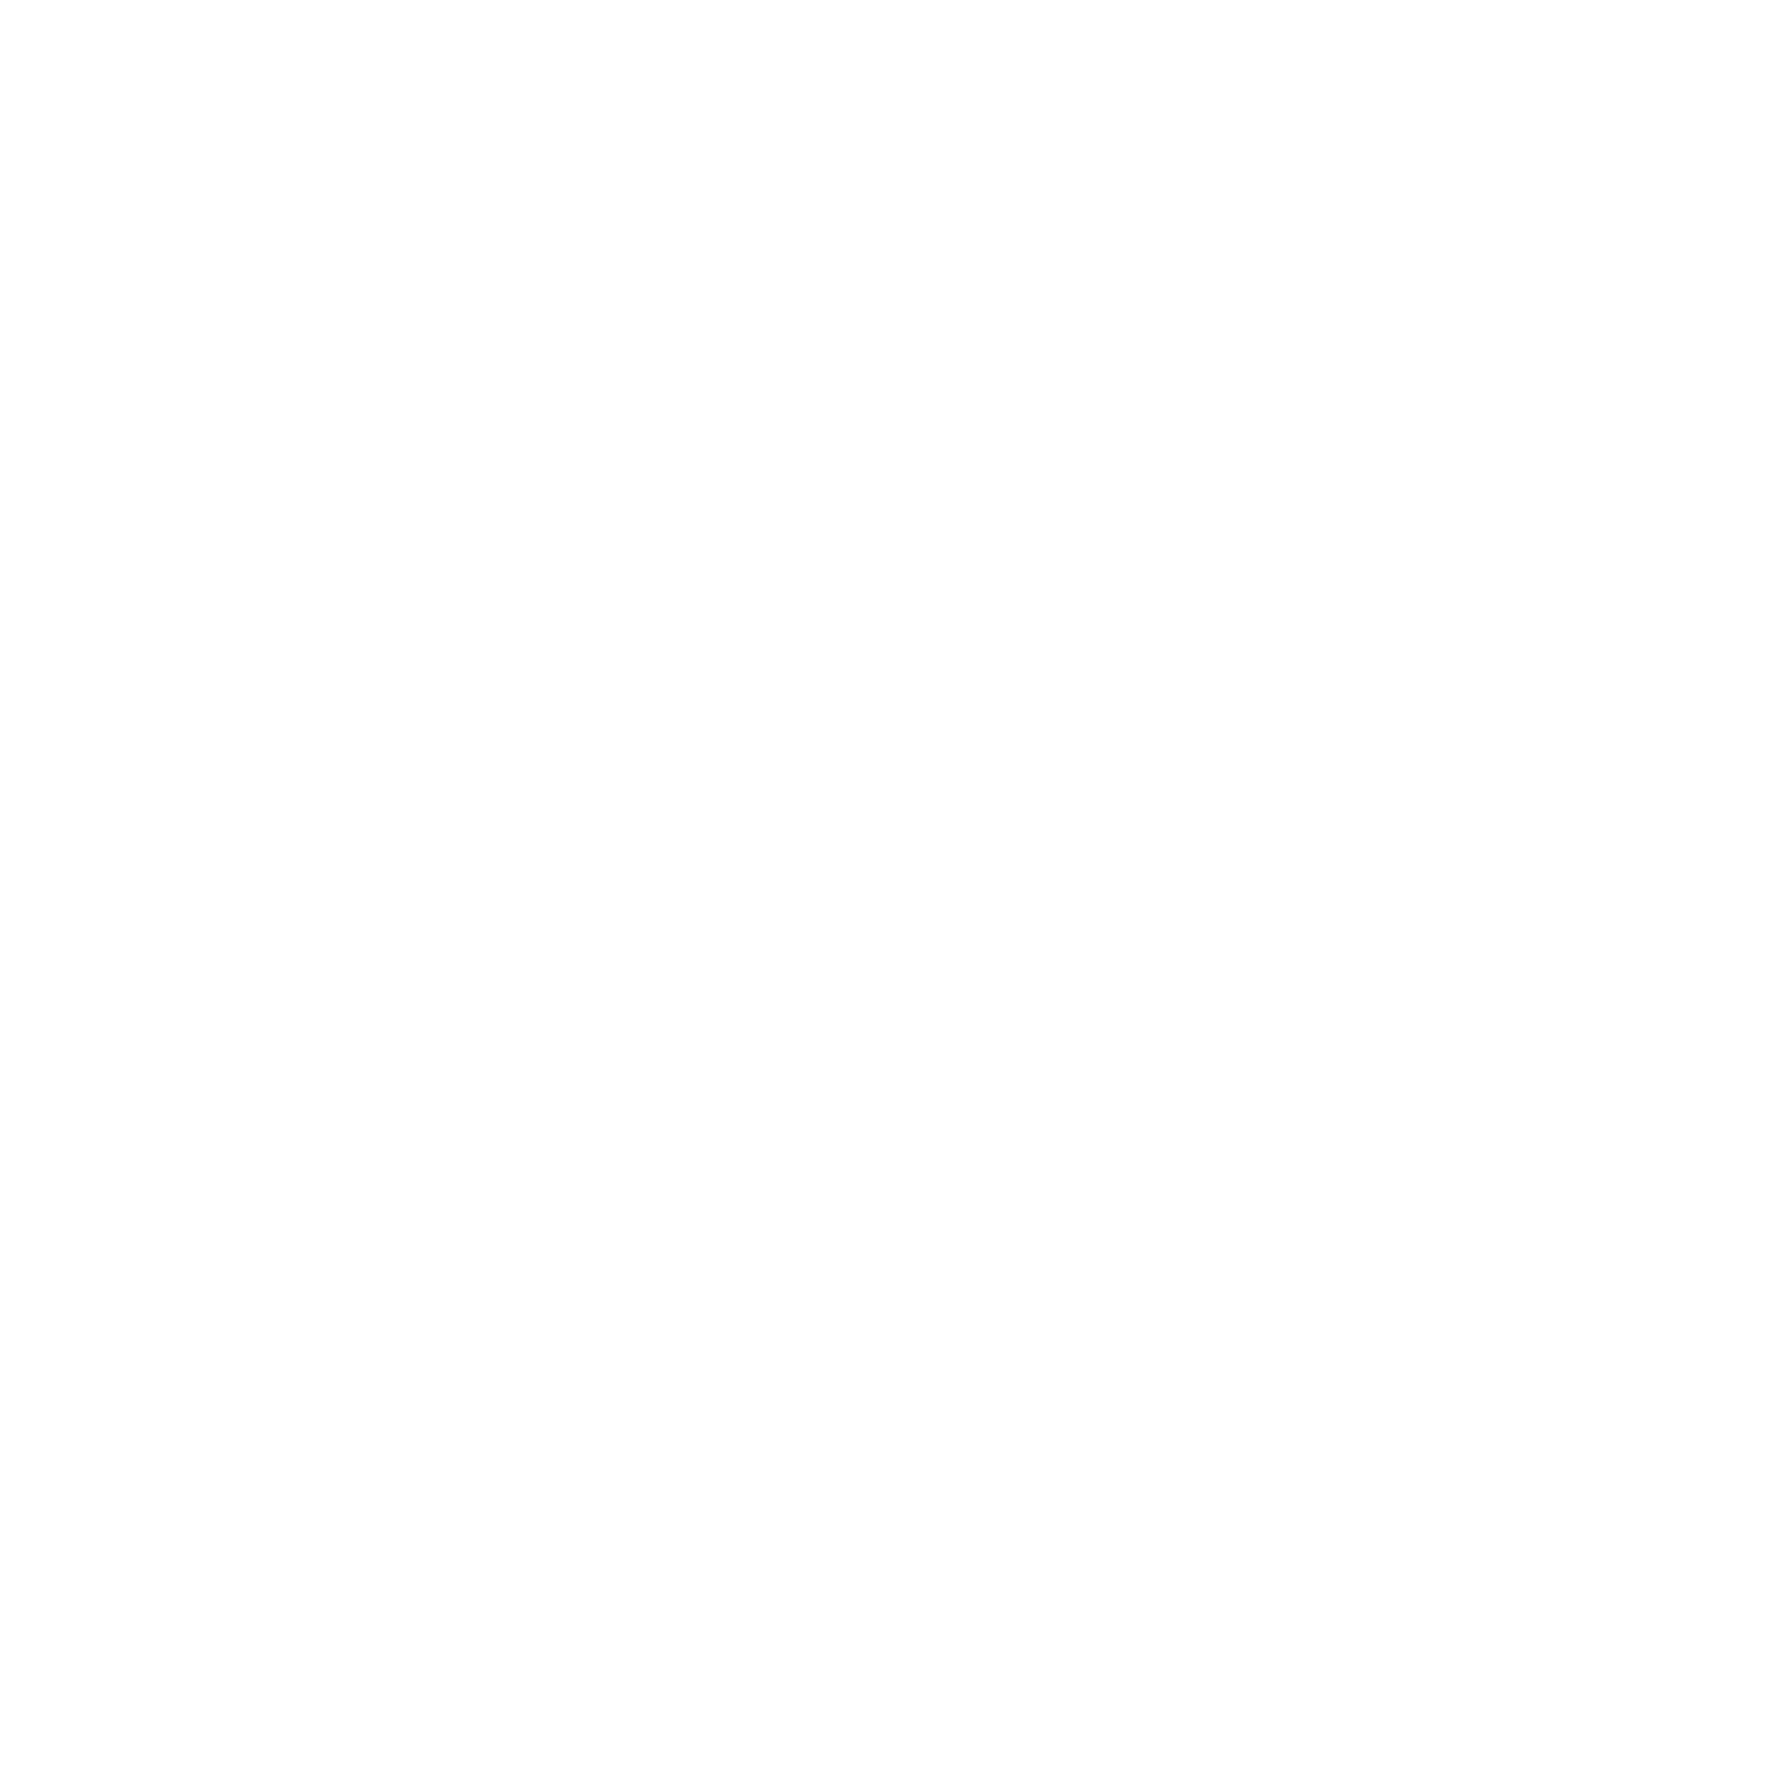 VAUDE_Logo_Black_150mm.png